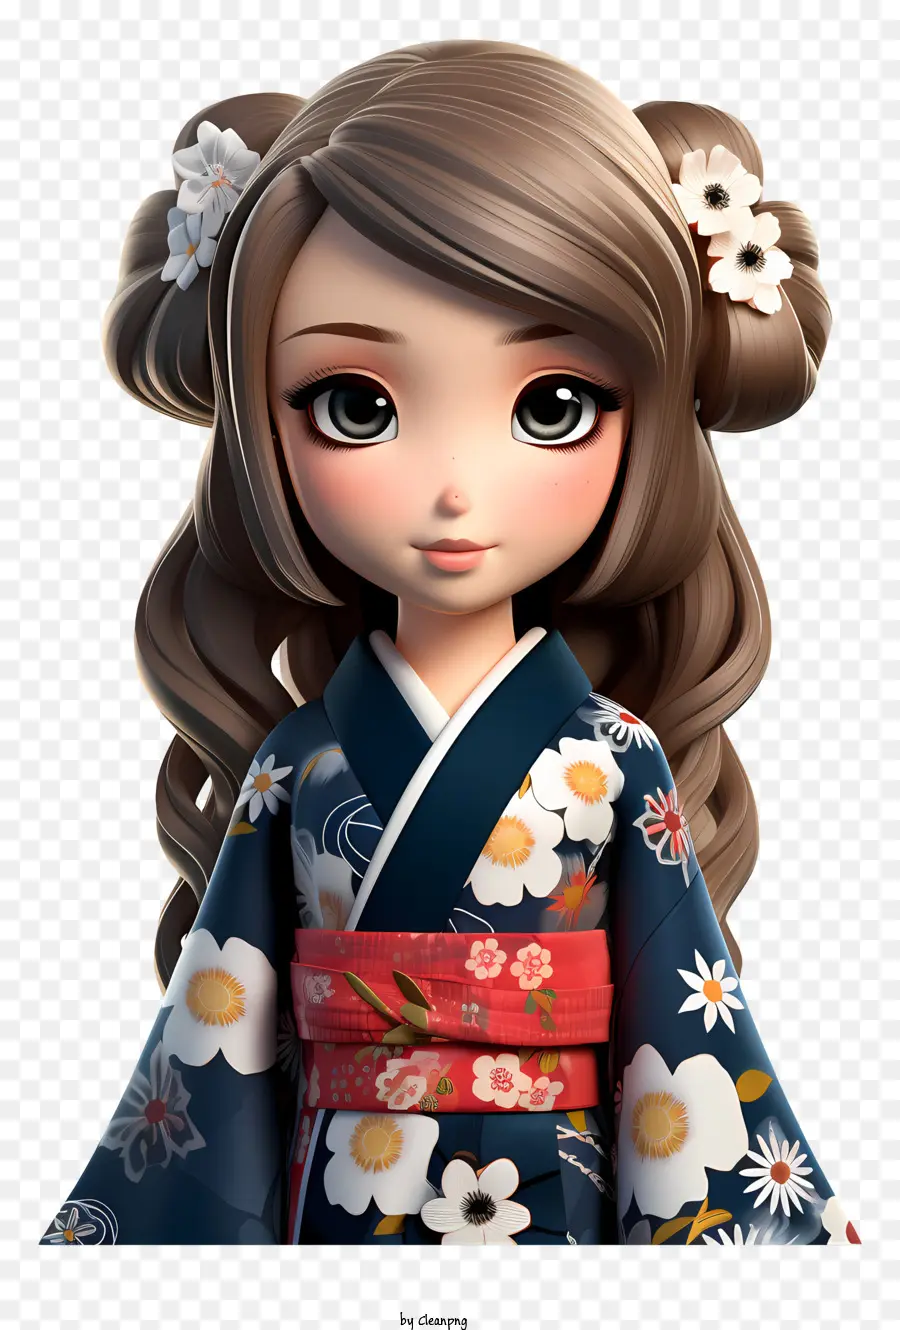 florales Design - 3D -Bild der Frau in Kimono mit Blumenmuster